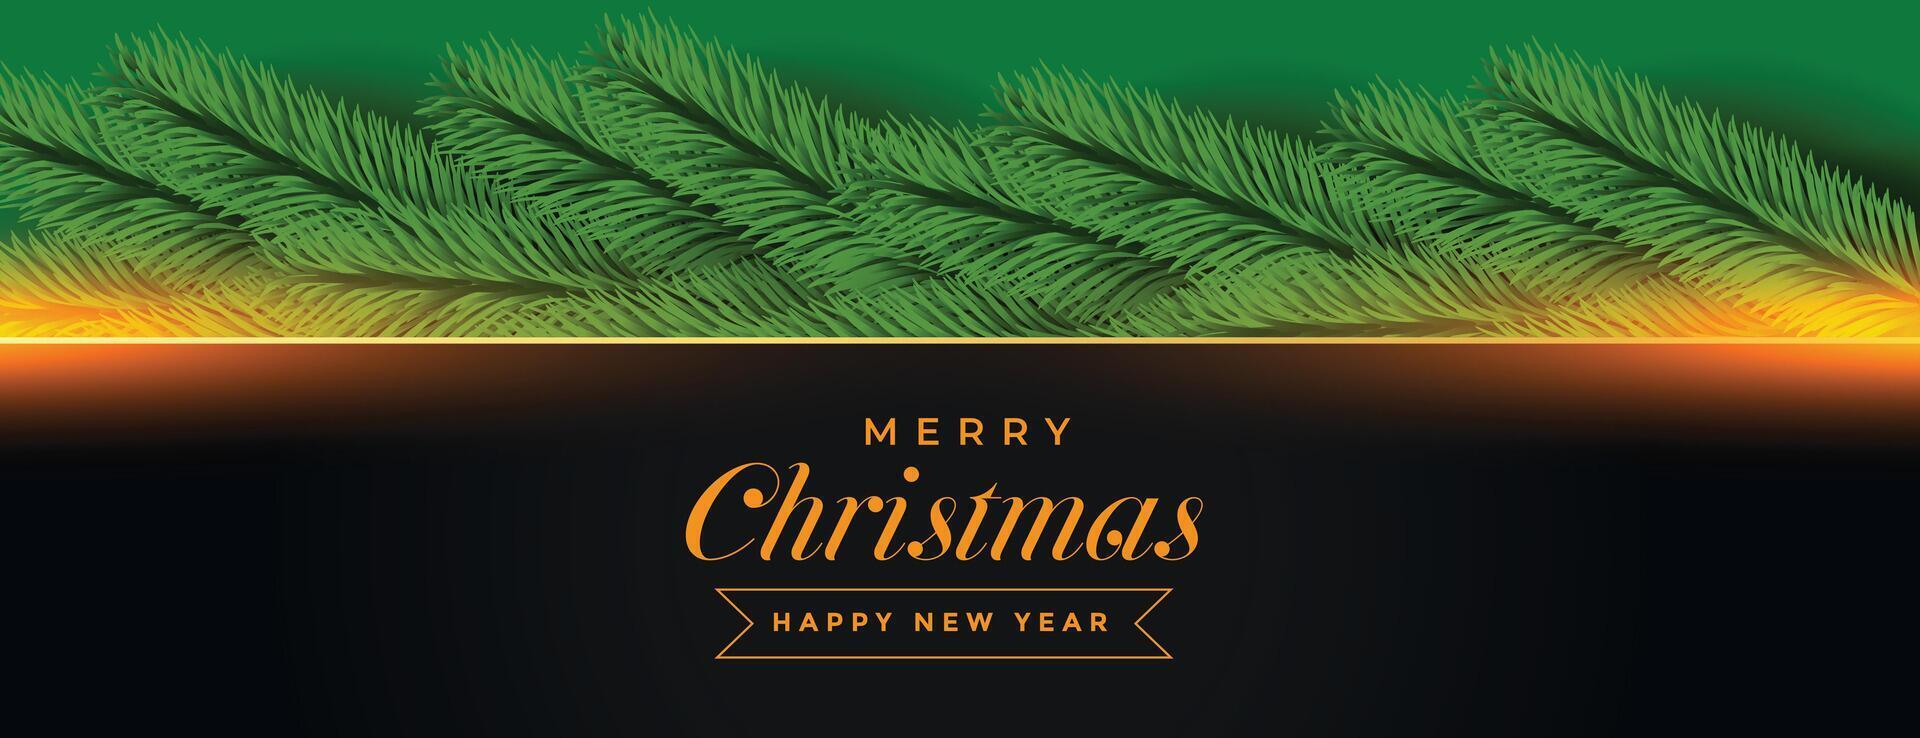 alegre Navidad bandera con pino árbol decoración vector